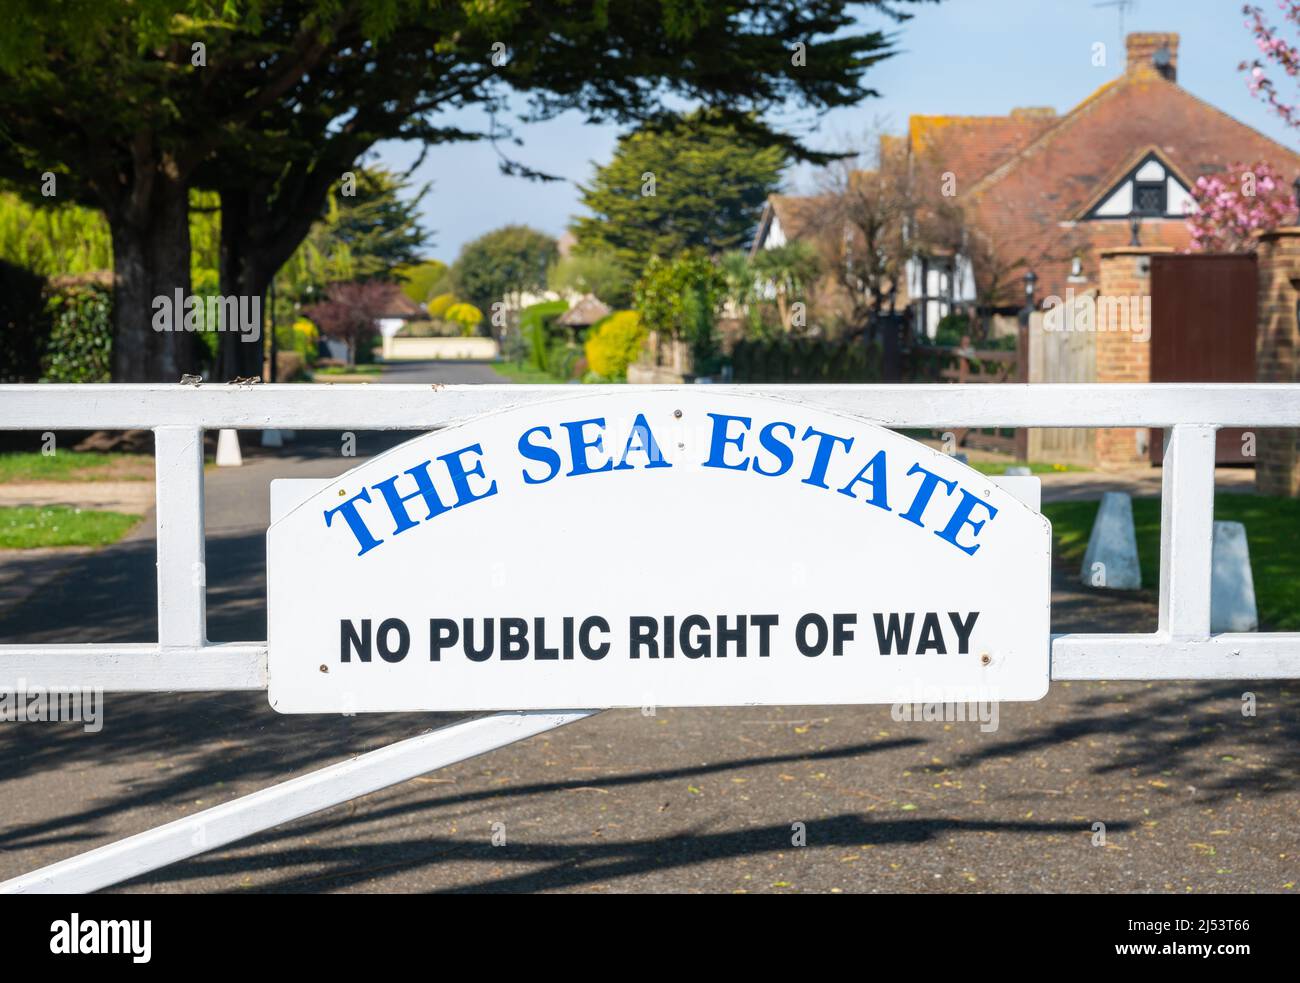 Schild und Tor am Eingang zum Sea Estate, einem privaten Anwesen ohne öffentliches Wegerecht in Rustington, West Sussex, England, Großbritannien. Stockfoto